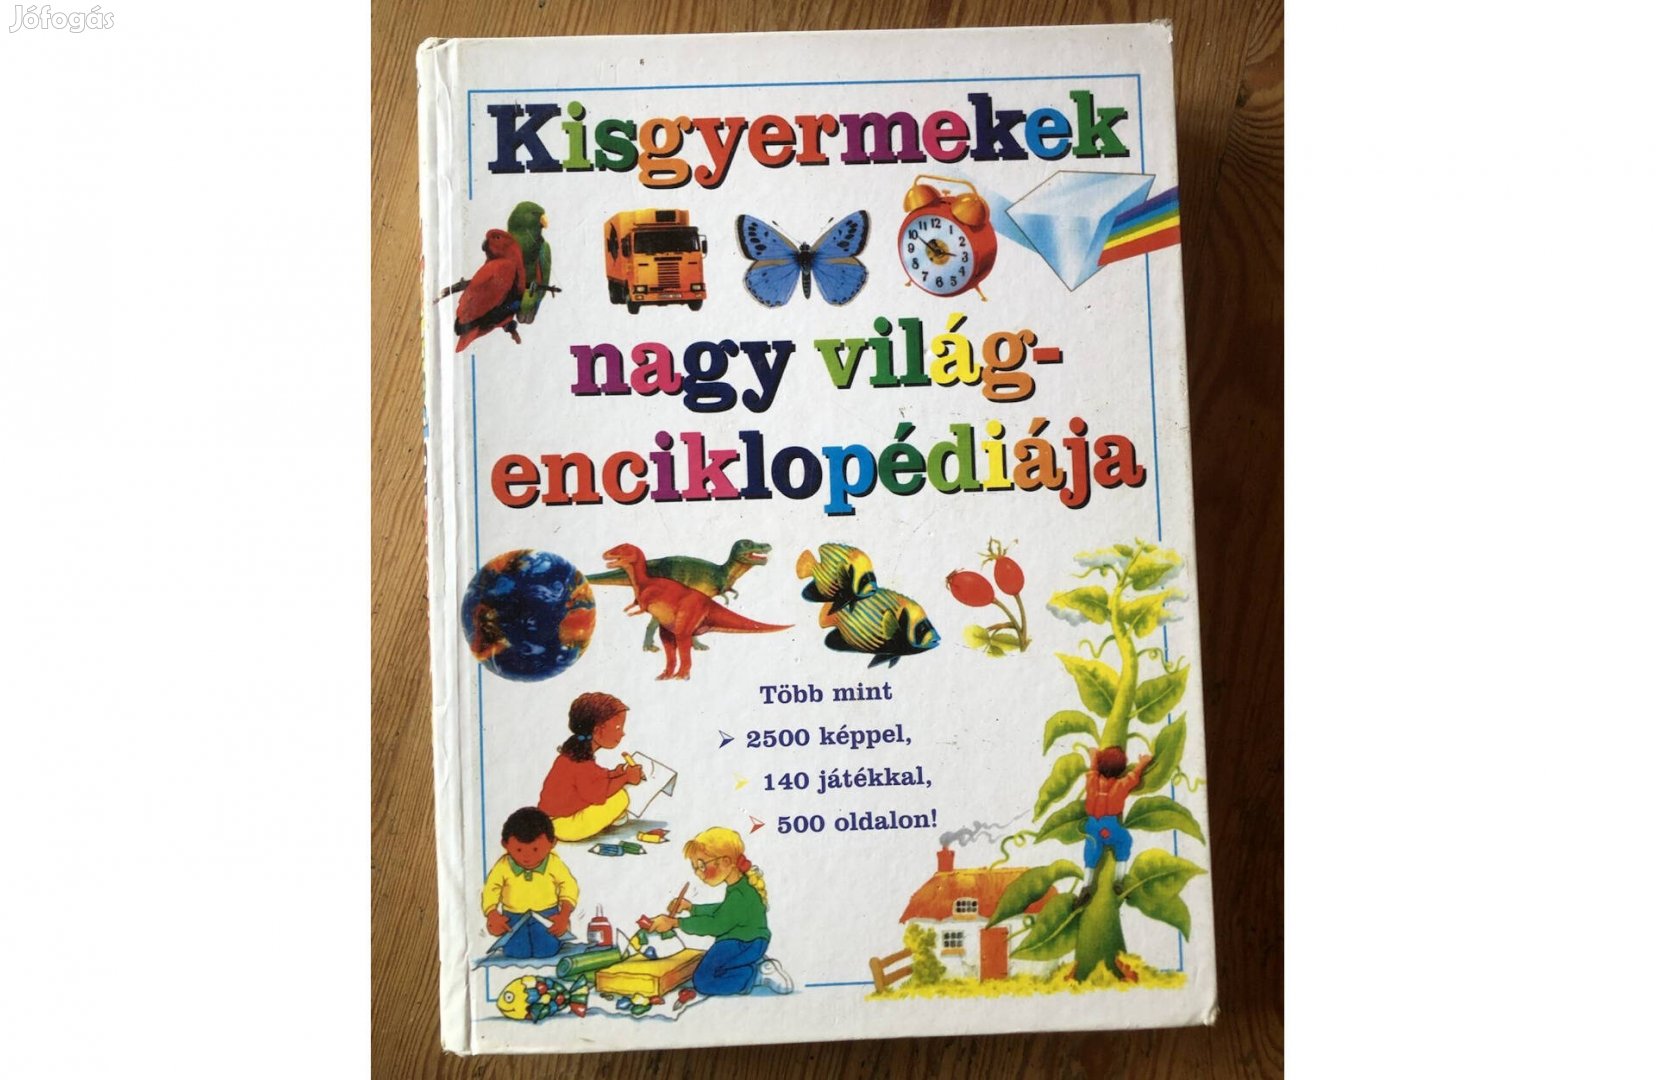 Kisgyermekek nagy világenciklopédiája könyv 4500 Ft : Lenti